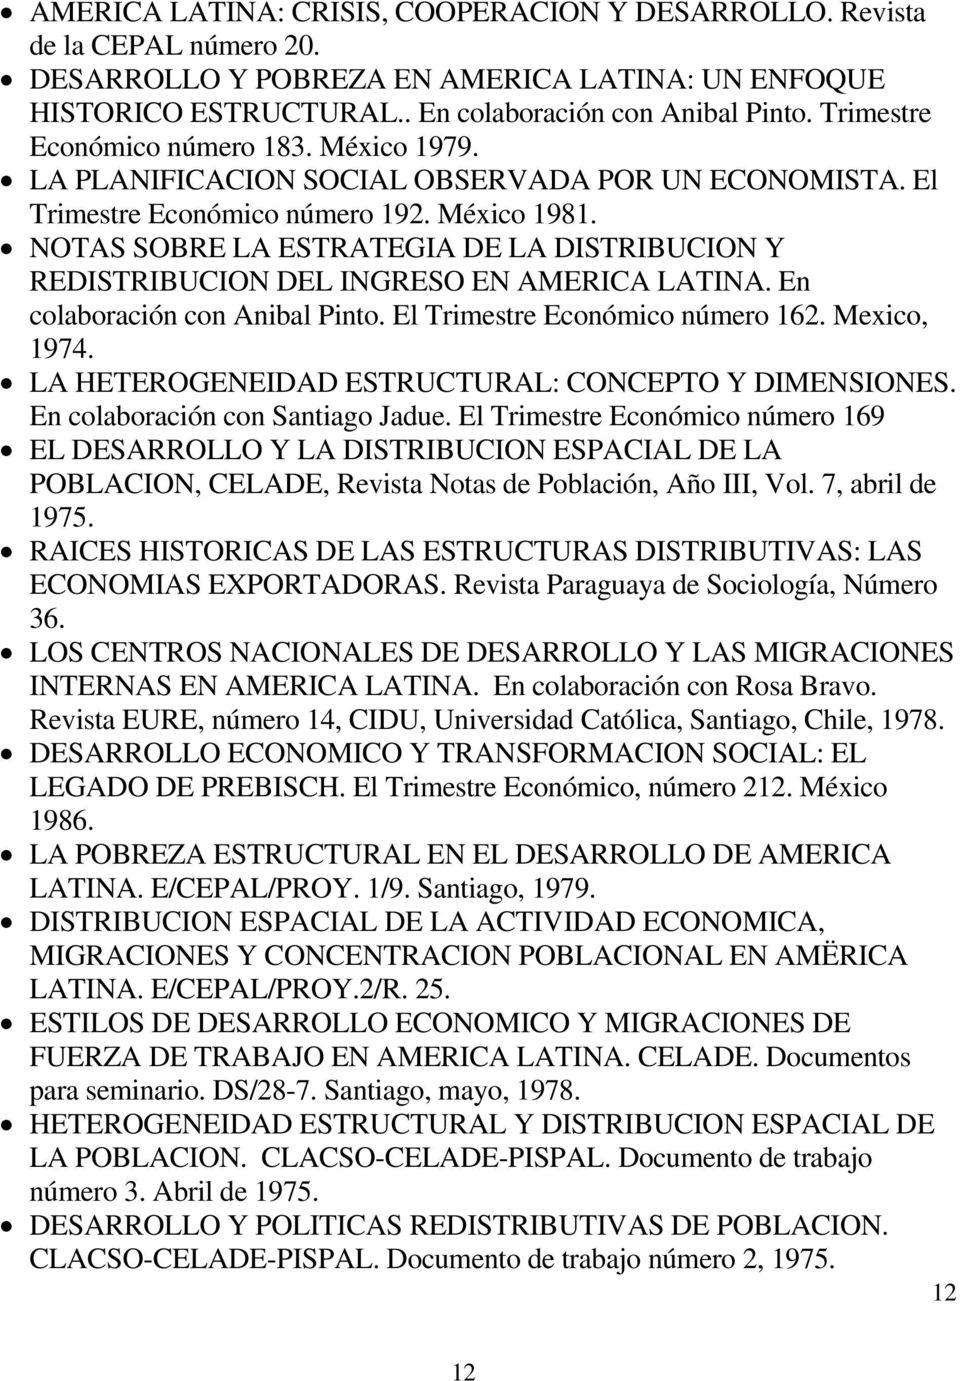 NOTAS SOBRE LA ESTRATEGIA DE LA DISTRIBUCION Y REDISTRIBUCION DEL INGRESO EN AMERICA LATINA. En colaboración con Anibal Pinto. El Trimestre Económico número 162. Mexico, 1974.